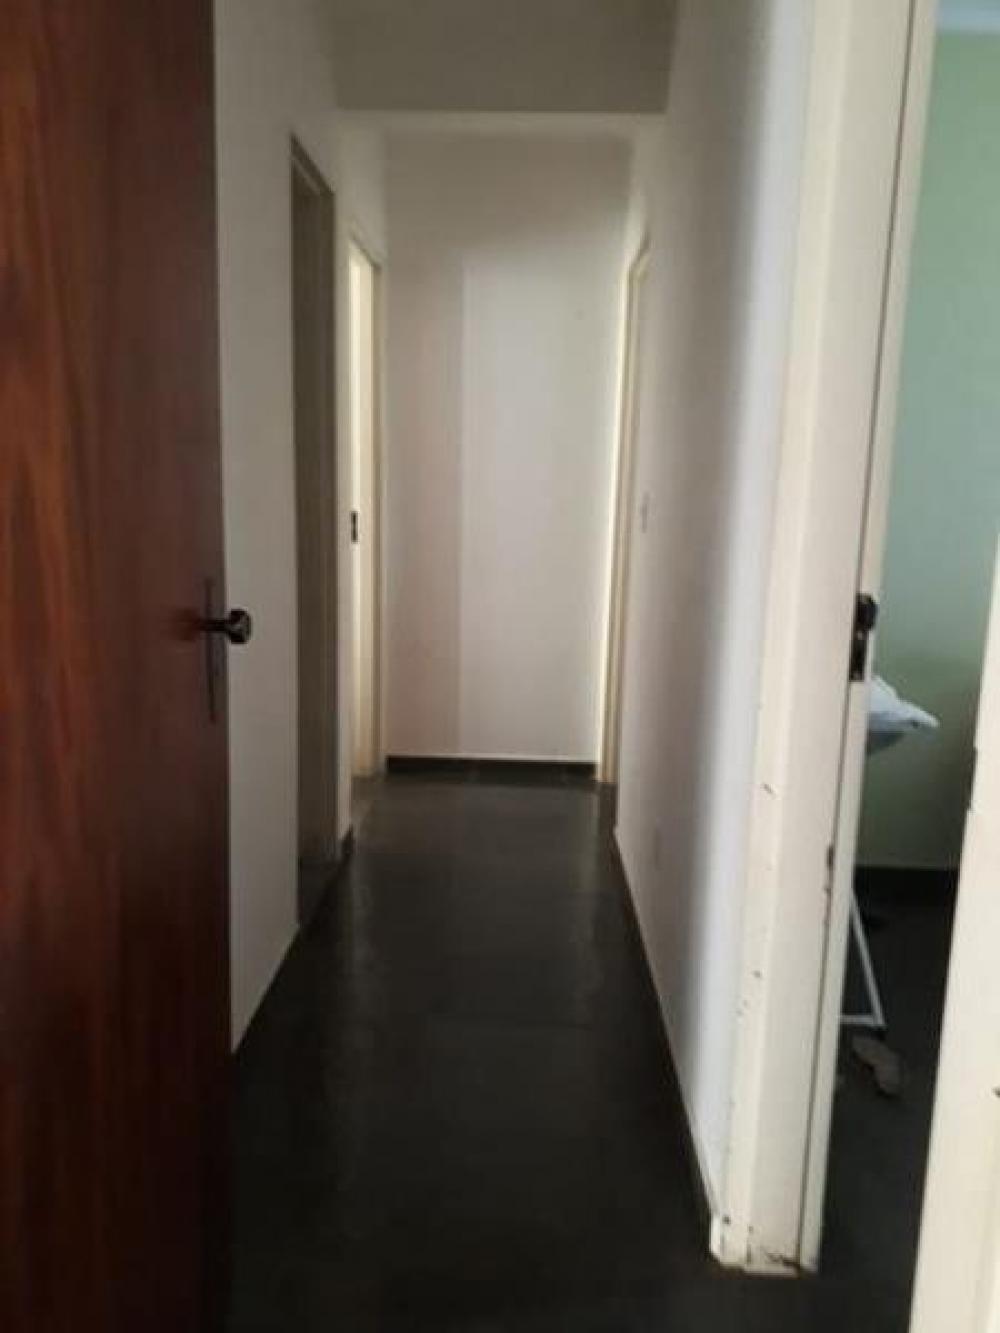 Comprar Apartamento / Padrão em São José do Rio Preto R$ 300.000,00 - Foto 7